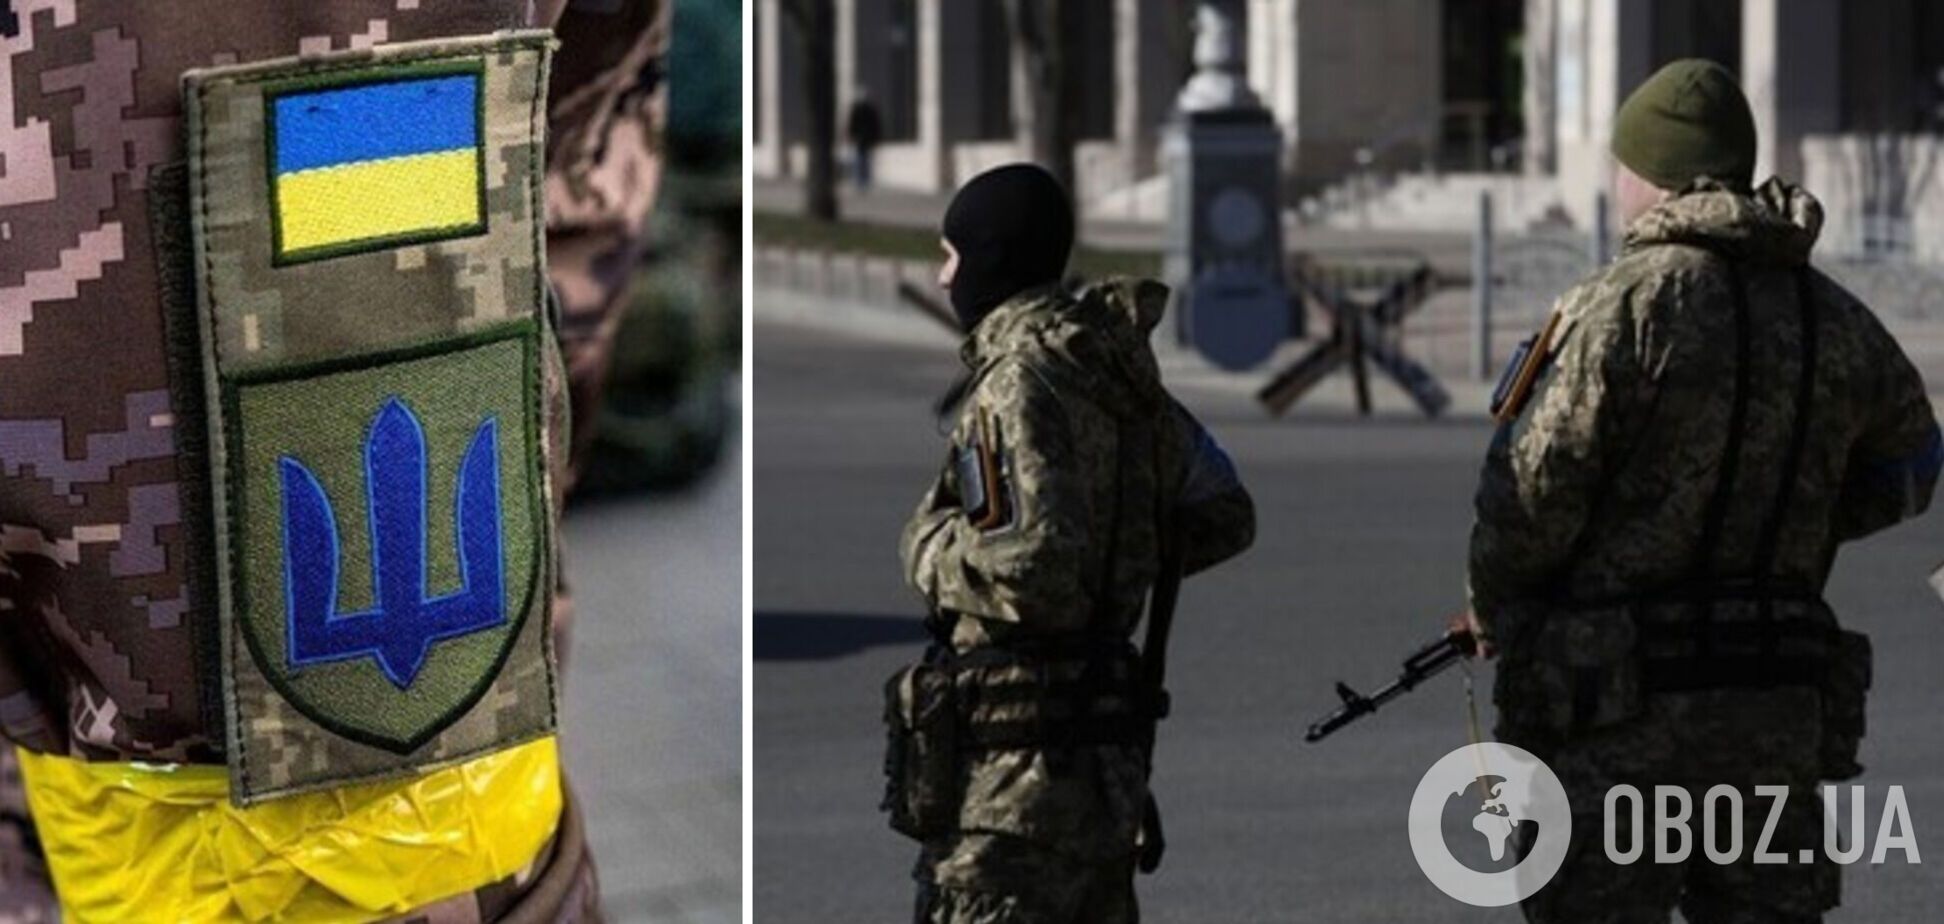 Чи можуть вручити повістку через СМС під час воєнного стану в Україні: роз'яснення